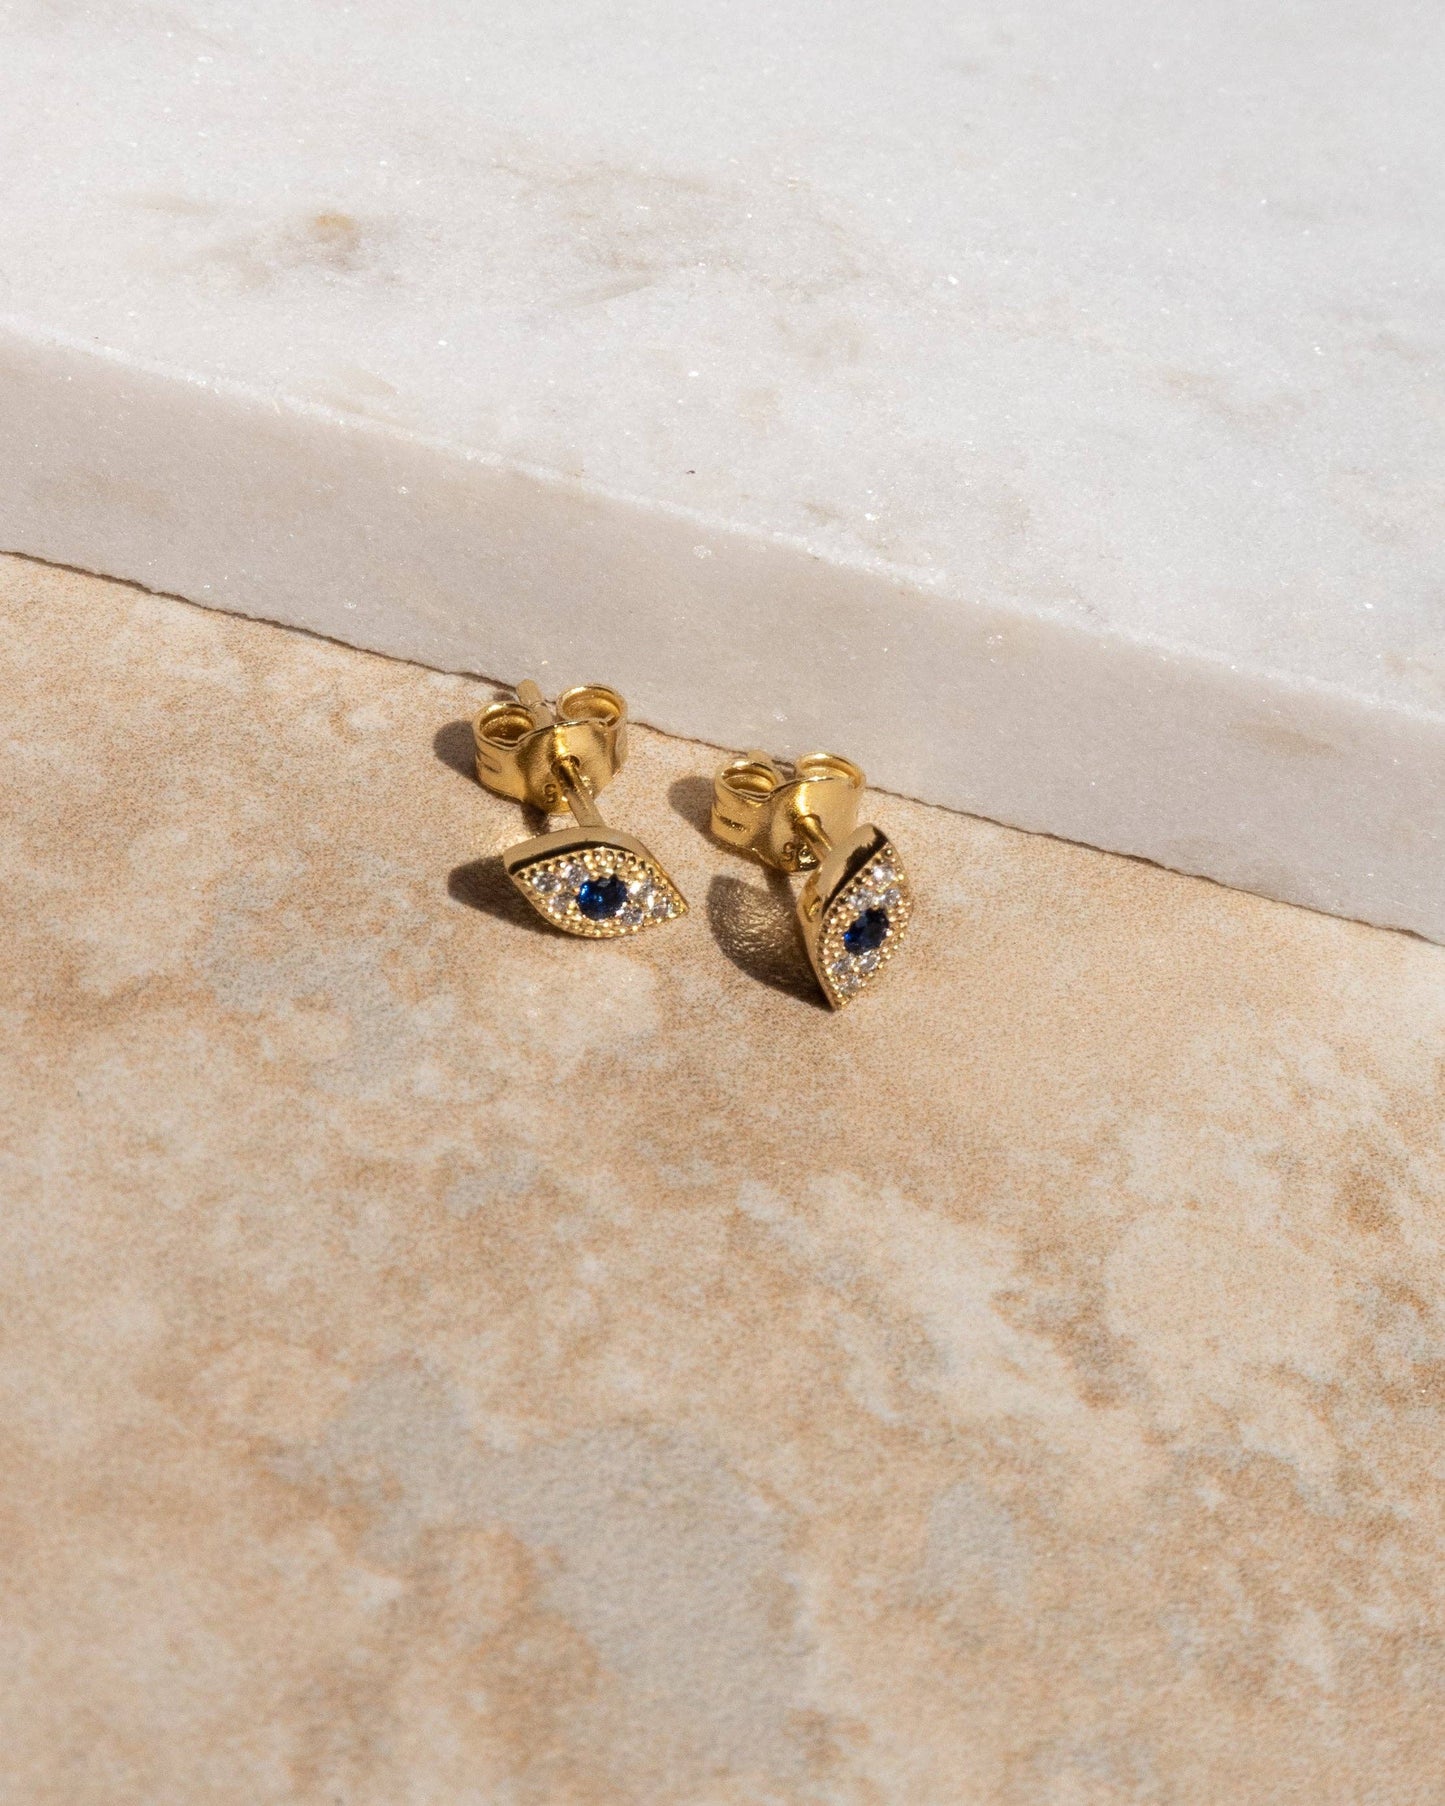 Luciana earrings - mini evil eye stud earrings: Gold